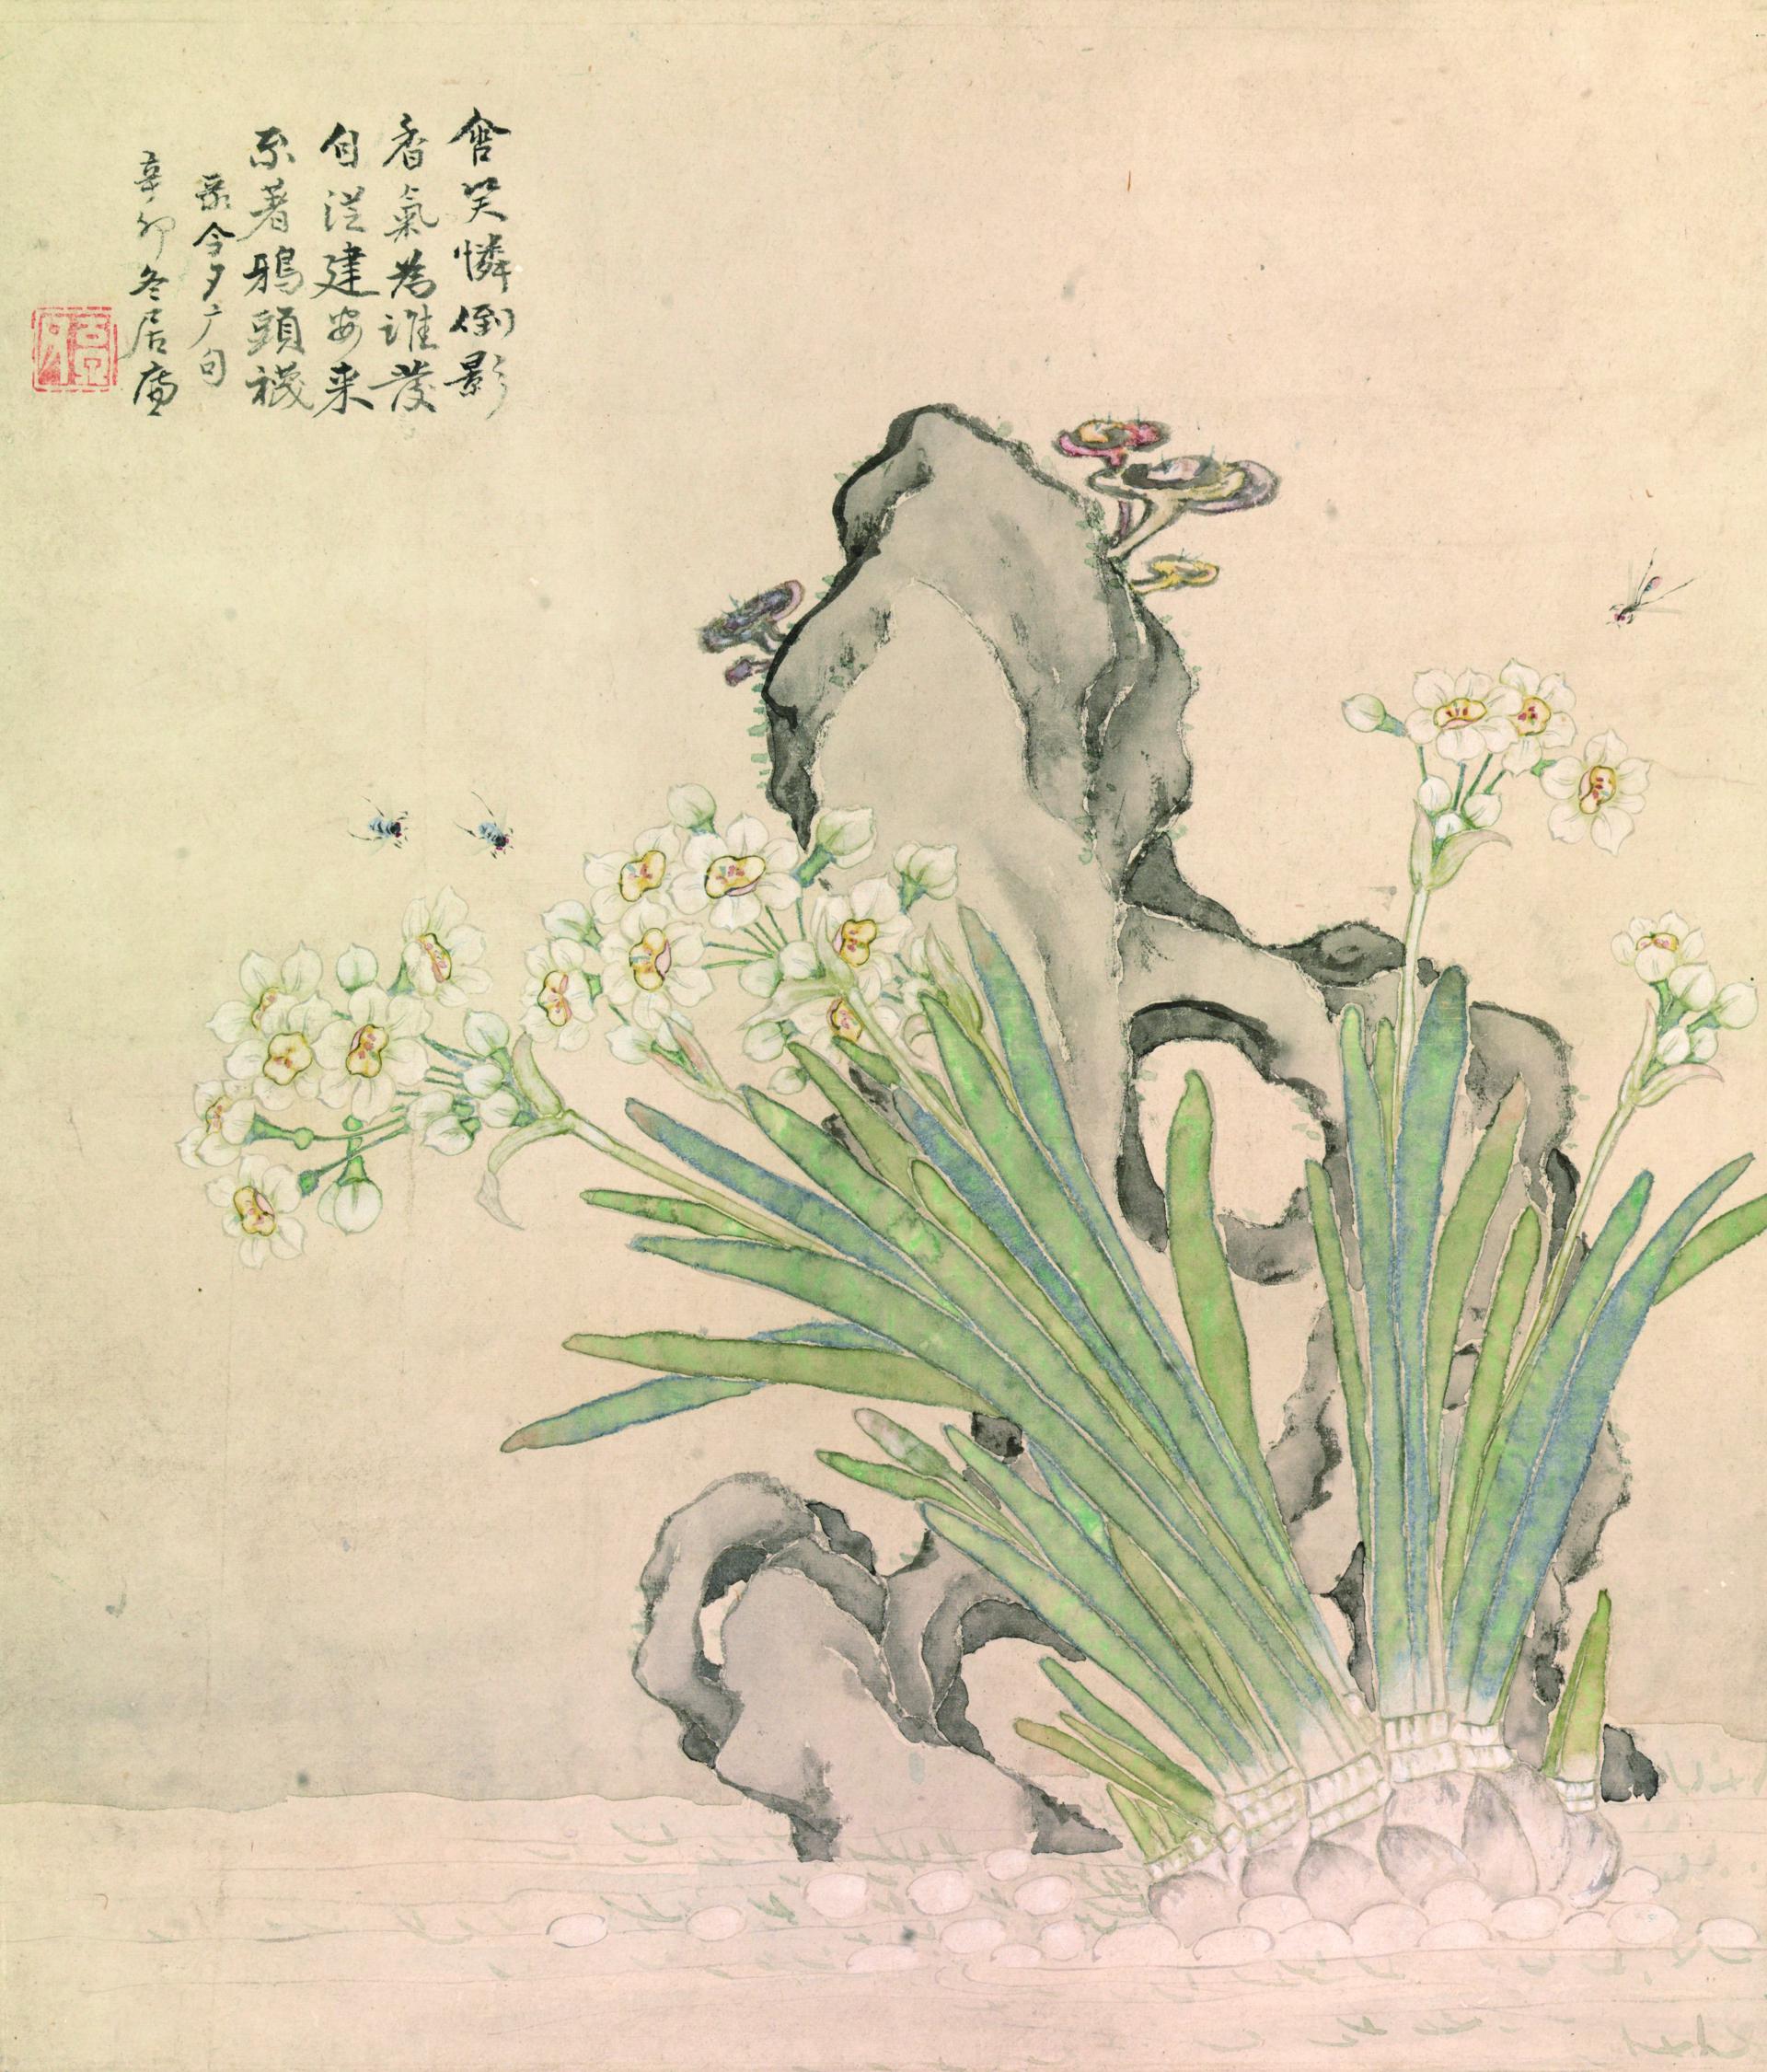 中国 工芸品 書画 掛軸 清・居廉「富貴白頭圖」 故宮博物院監製 V 1606 